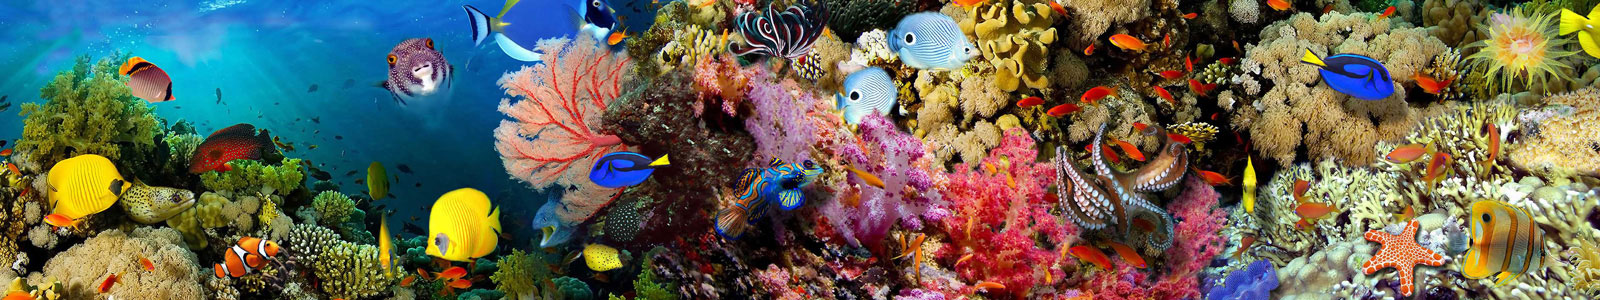 №3302 - Кораллы и рыбки